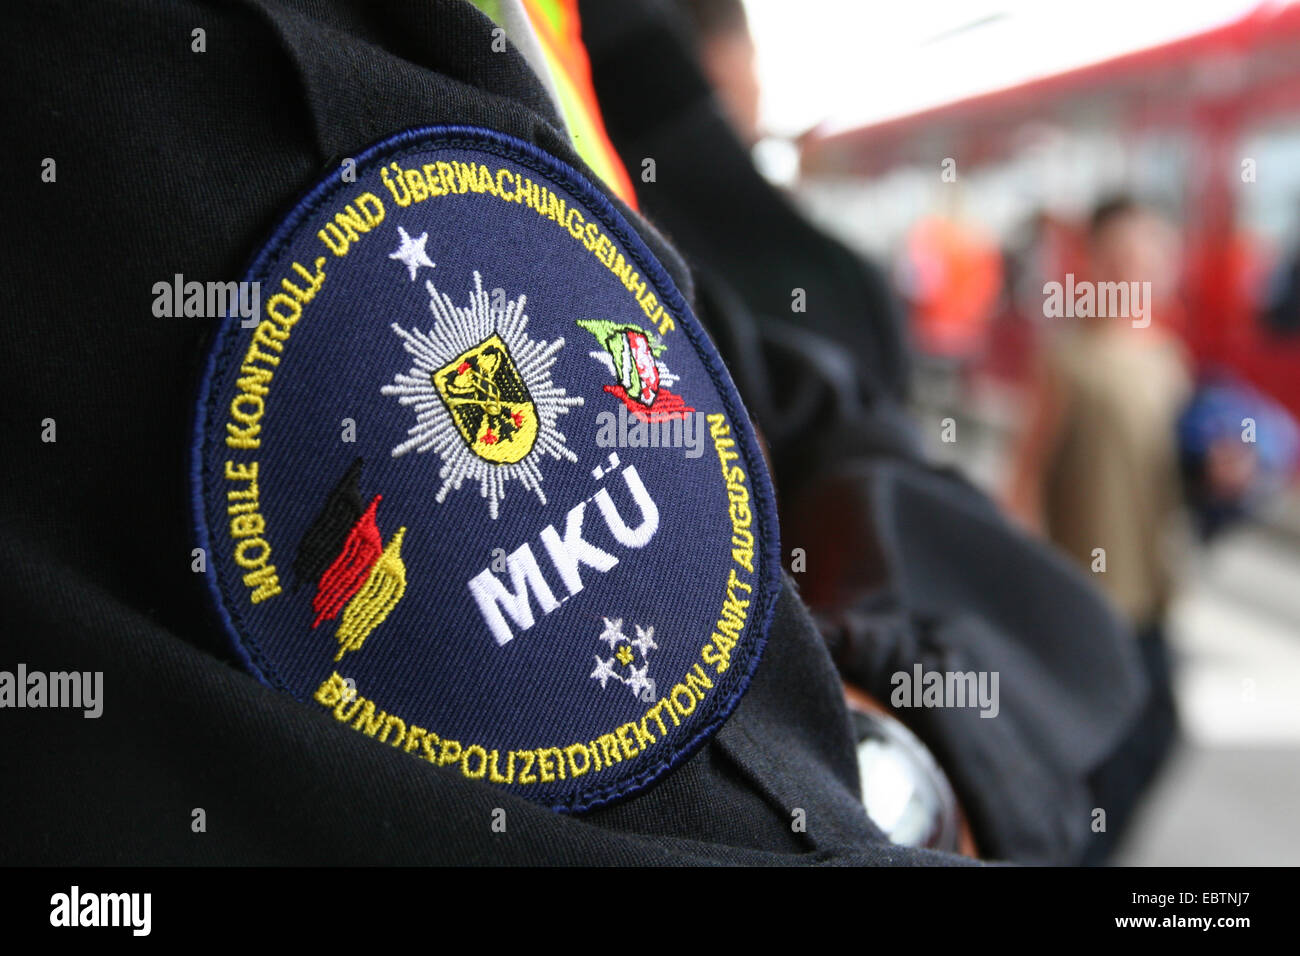 logo of police unit force on uniform, Germany, North Rhine-Westphalia Stock Photo